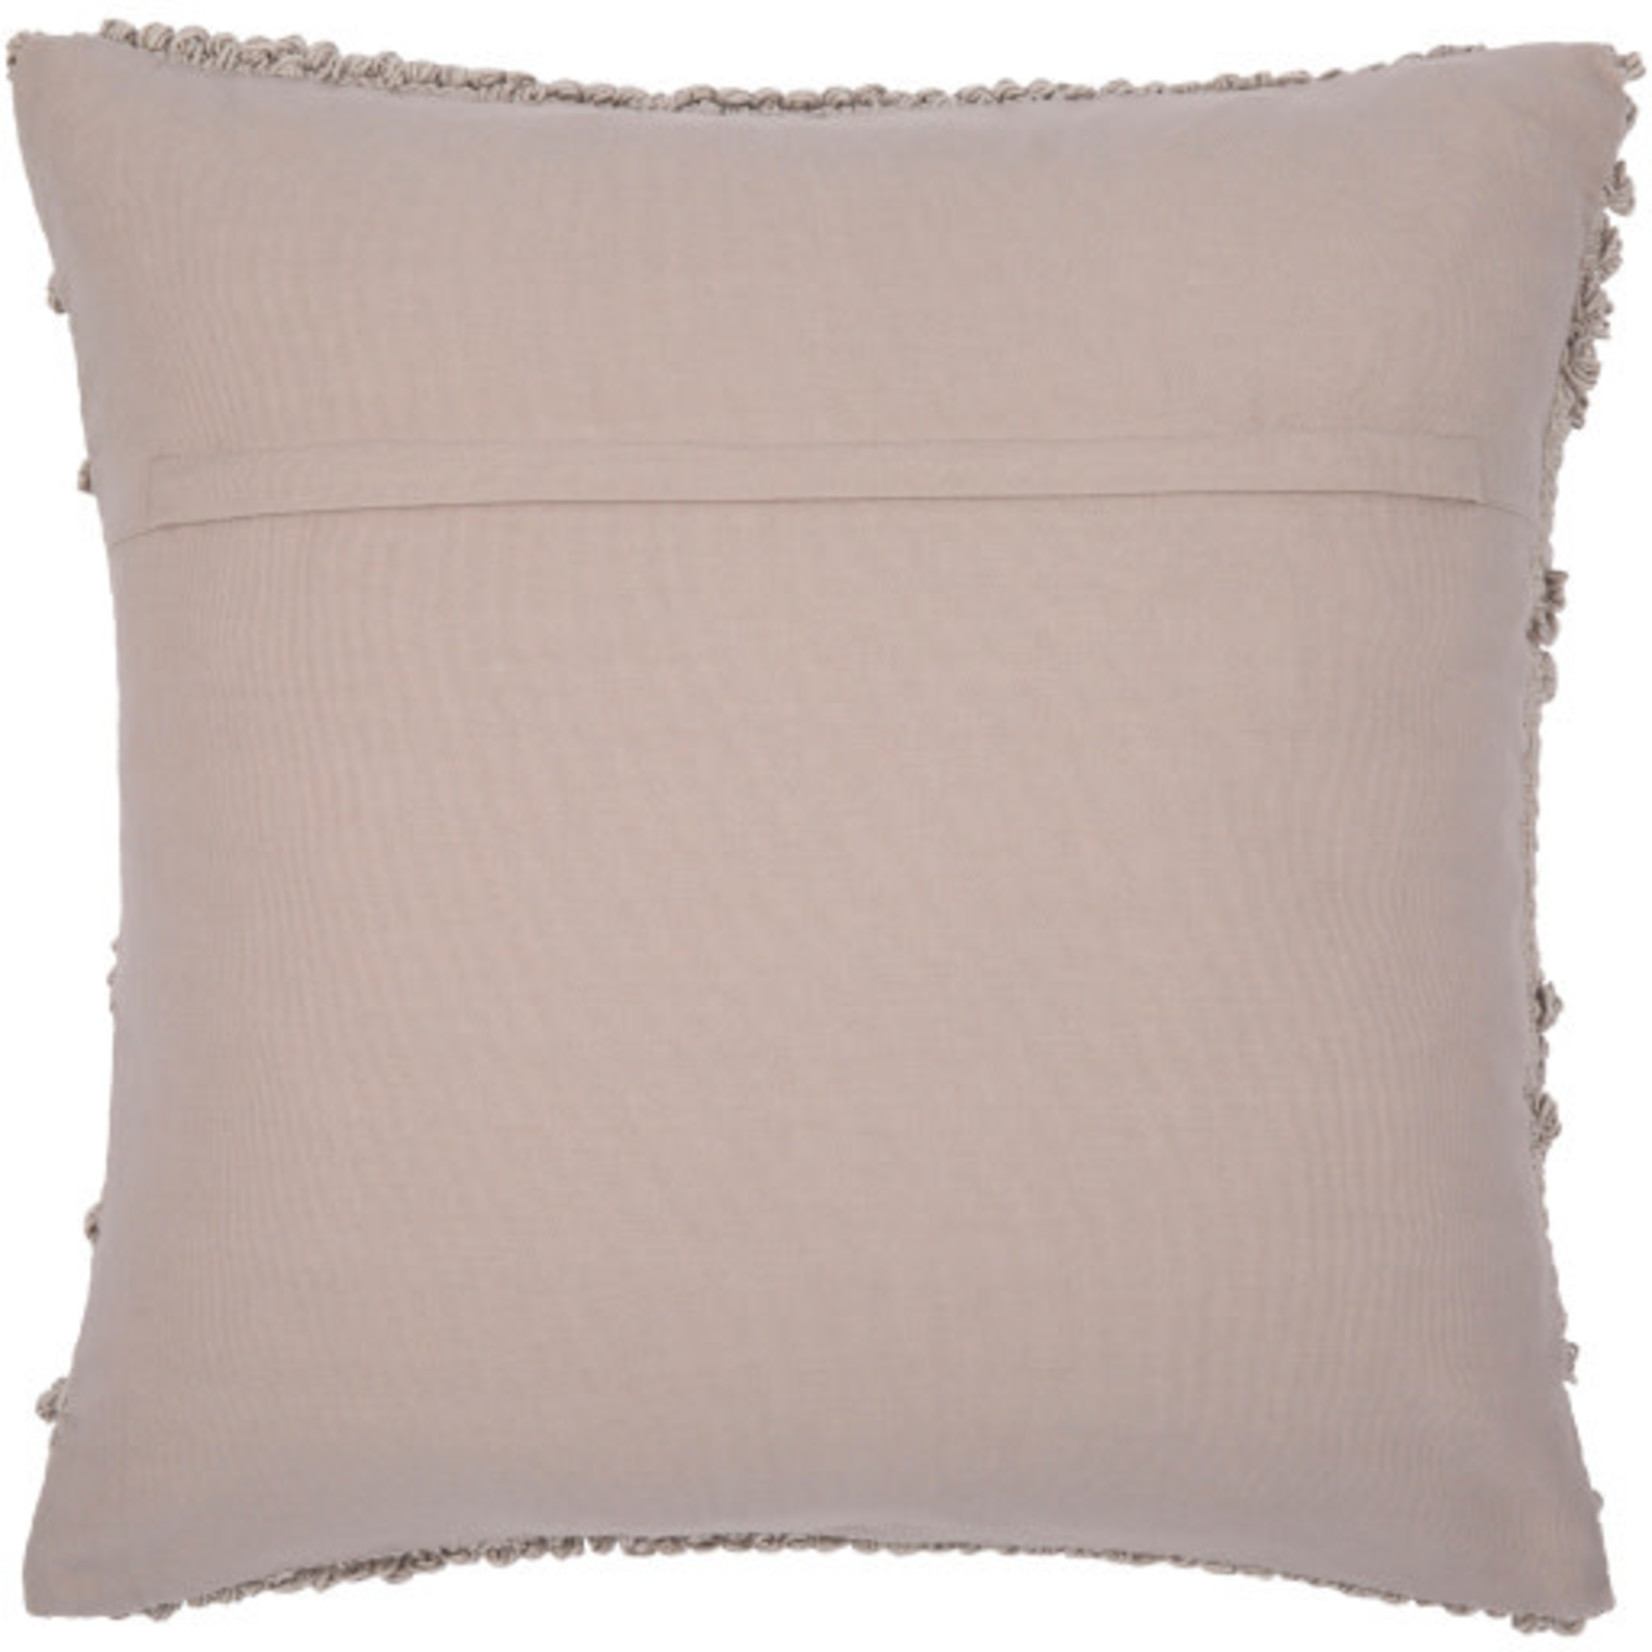 Surya 20x20 Pillow